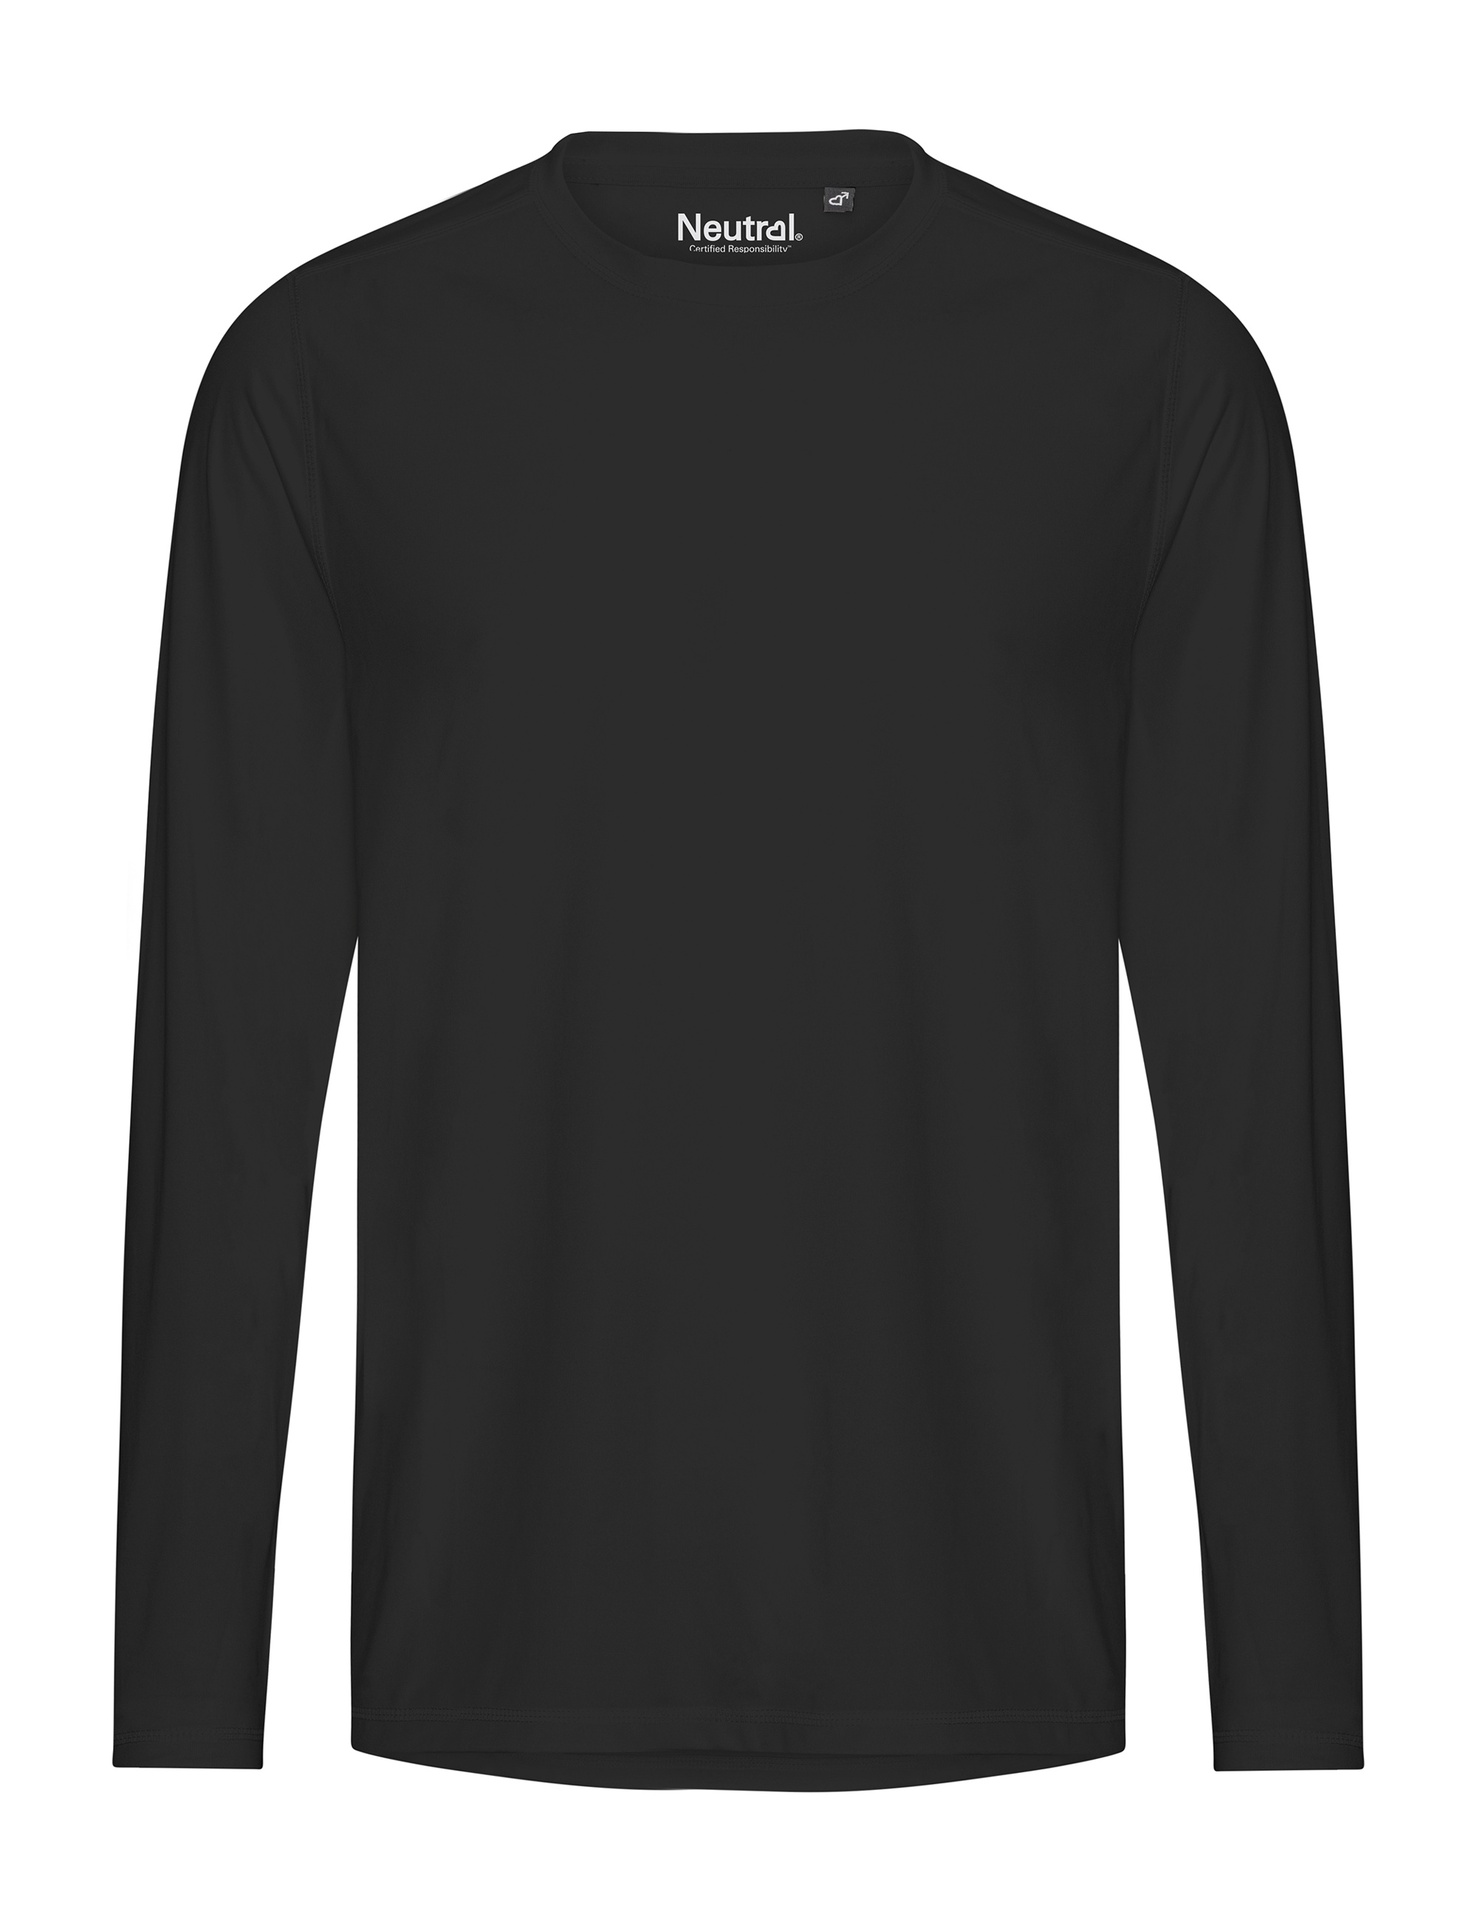 [PR/03829] Recycled Performance LS T-Shirt (Black 03, XL)